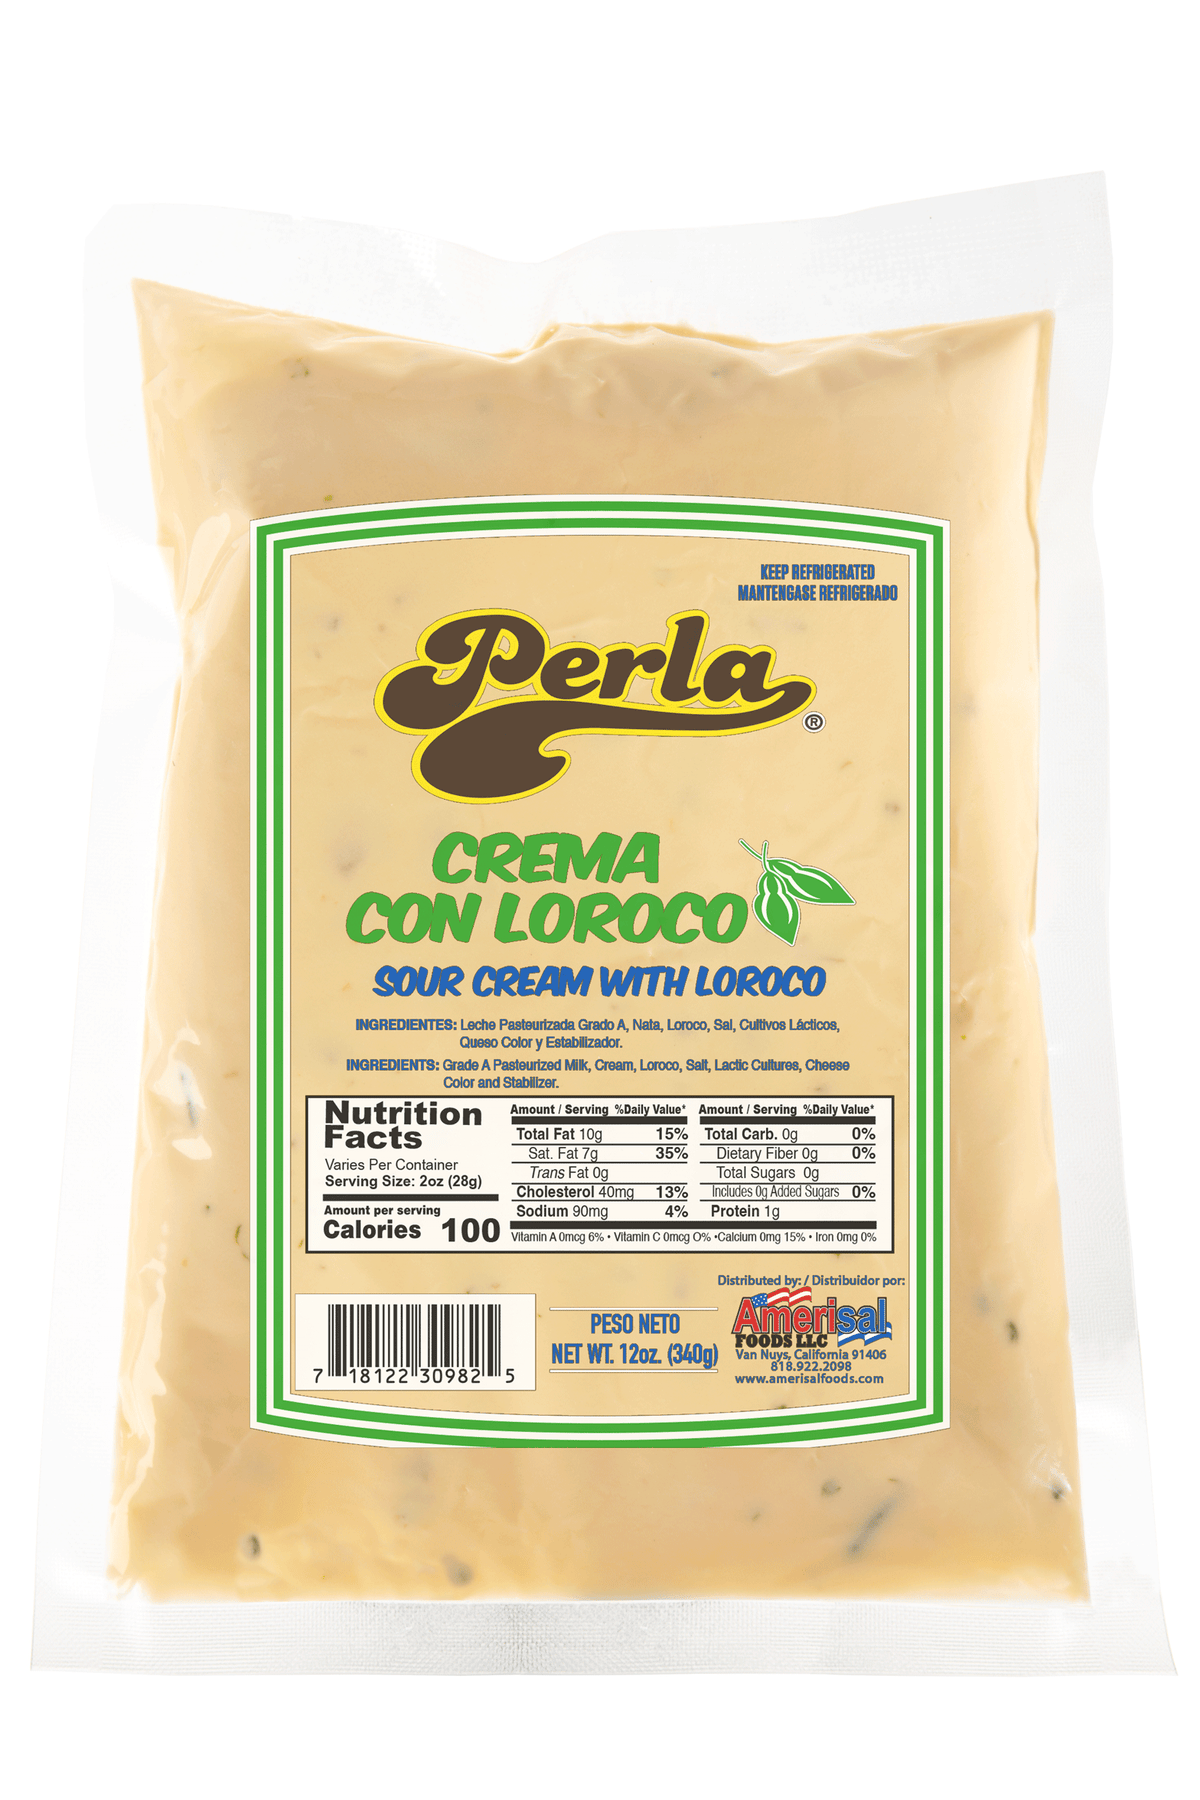 Perla Crema con Loroco (Sour Cream with Loroco) 12oz